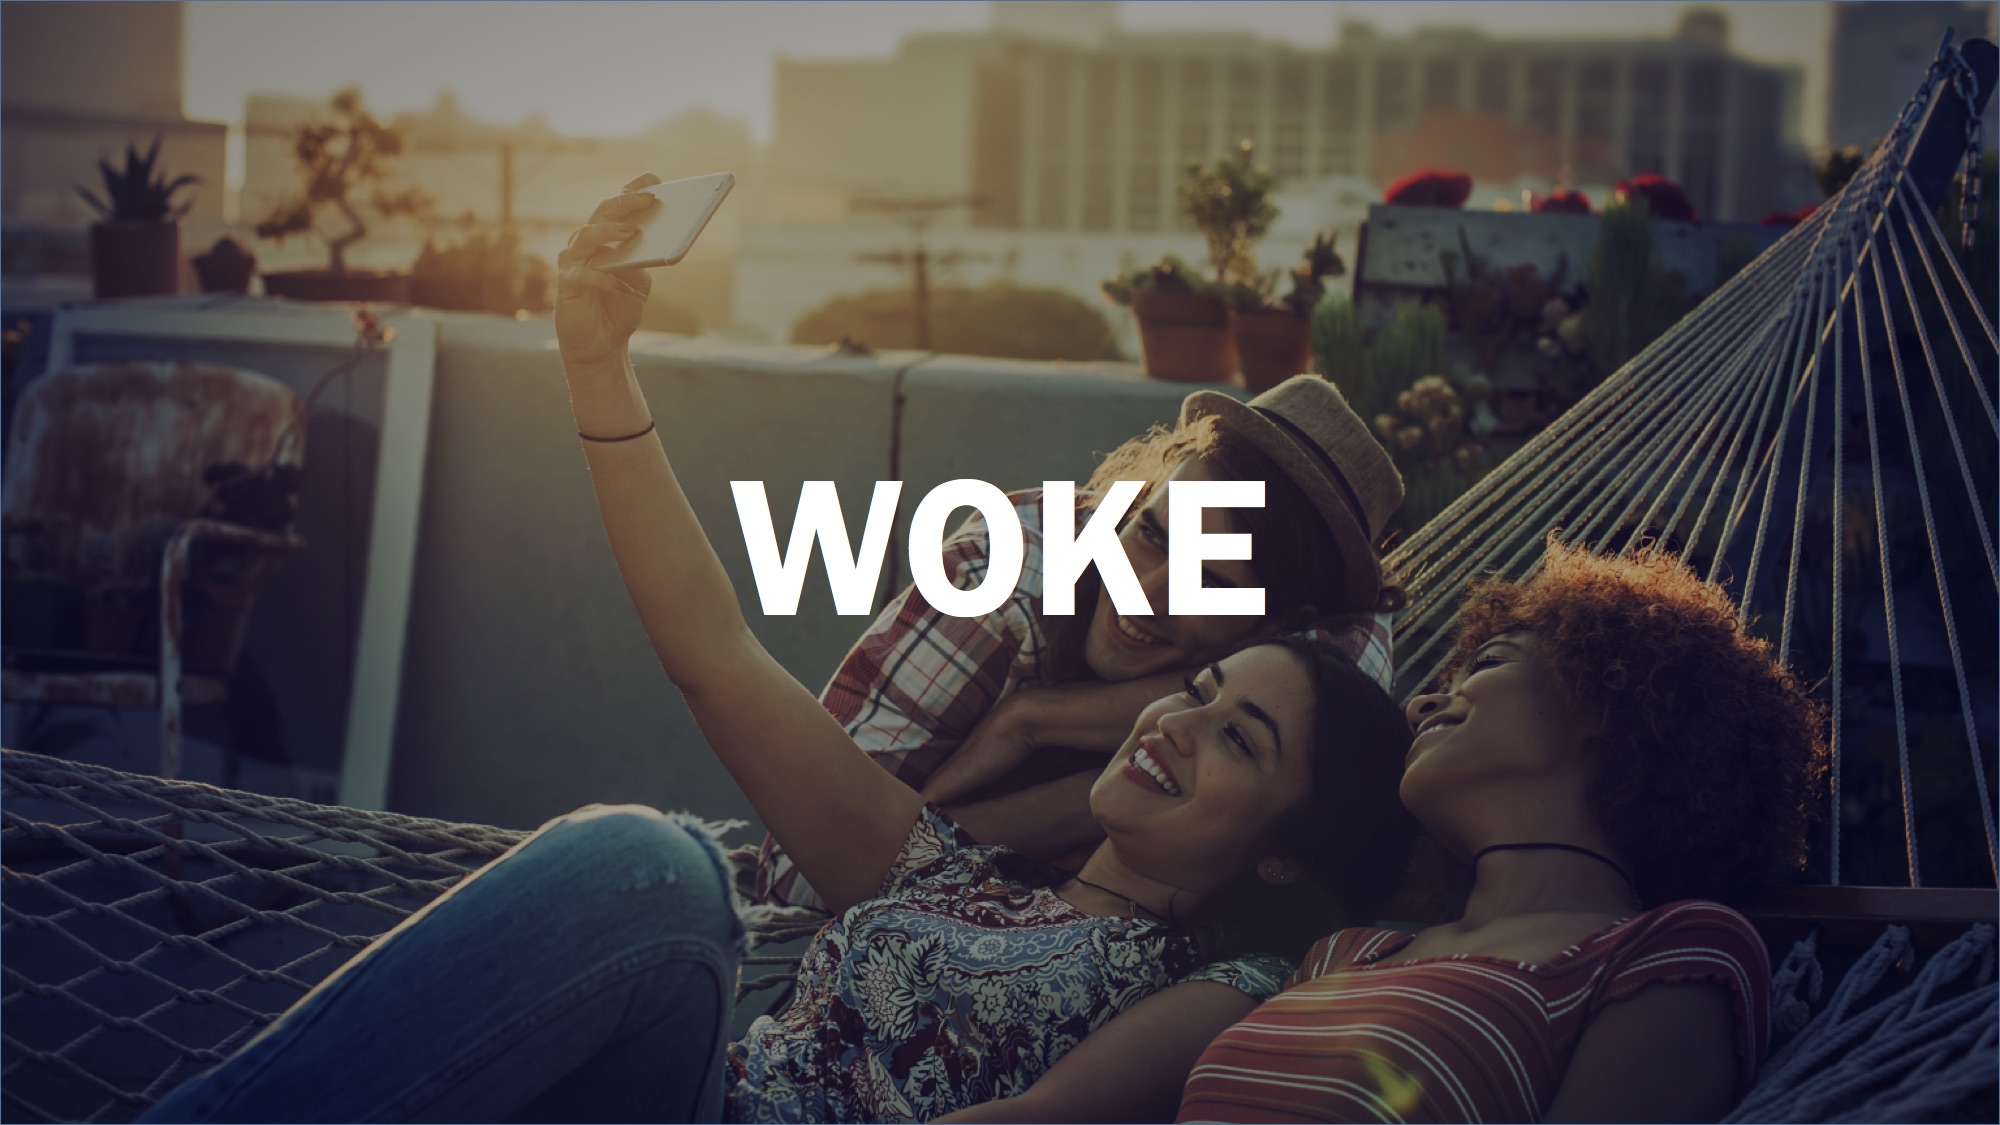 Woke Meaning / What Does Stay Woke Mean? Woke Definition I woke up